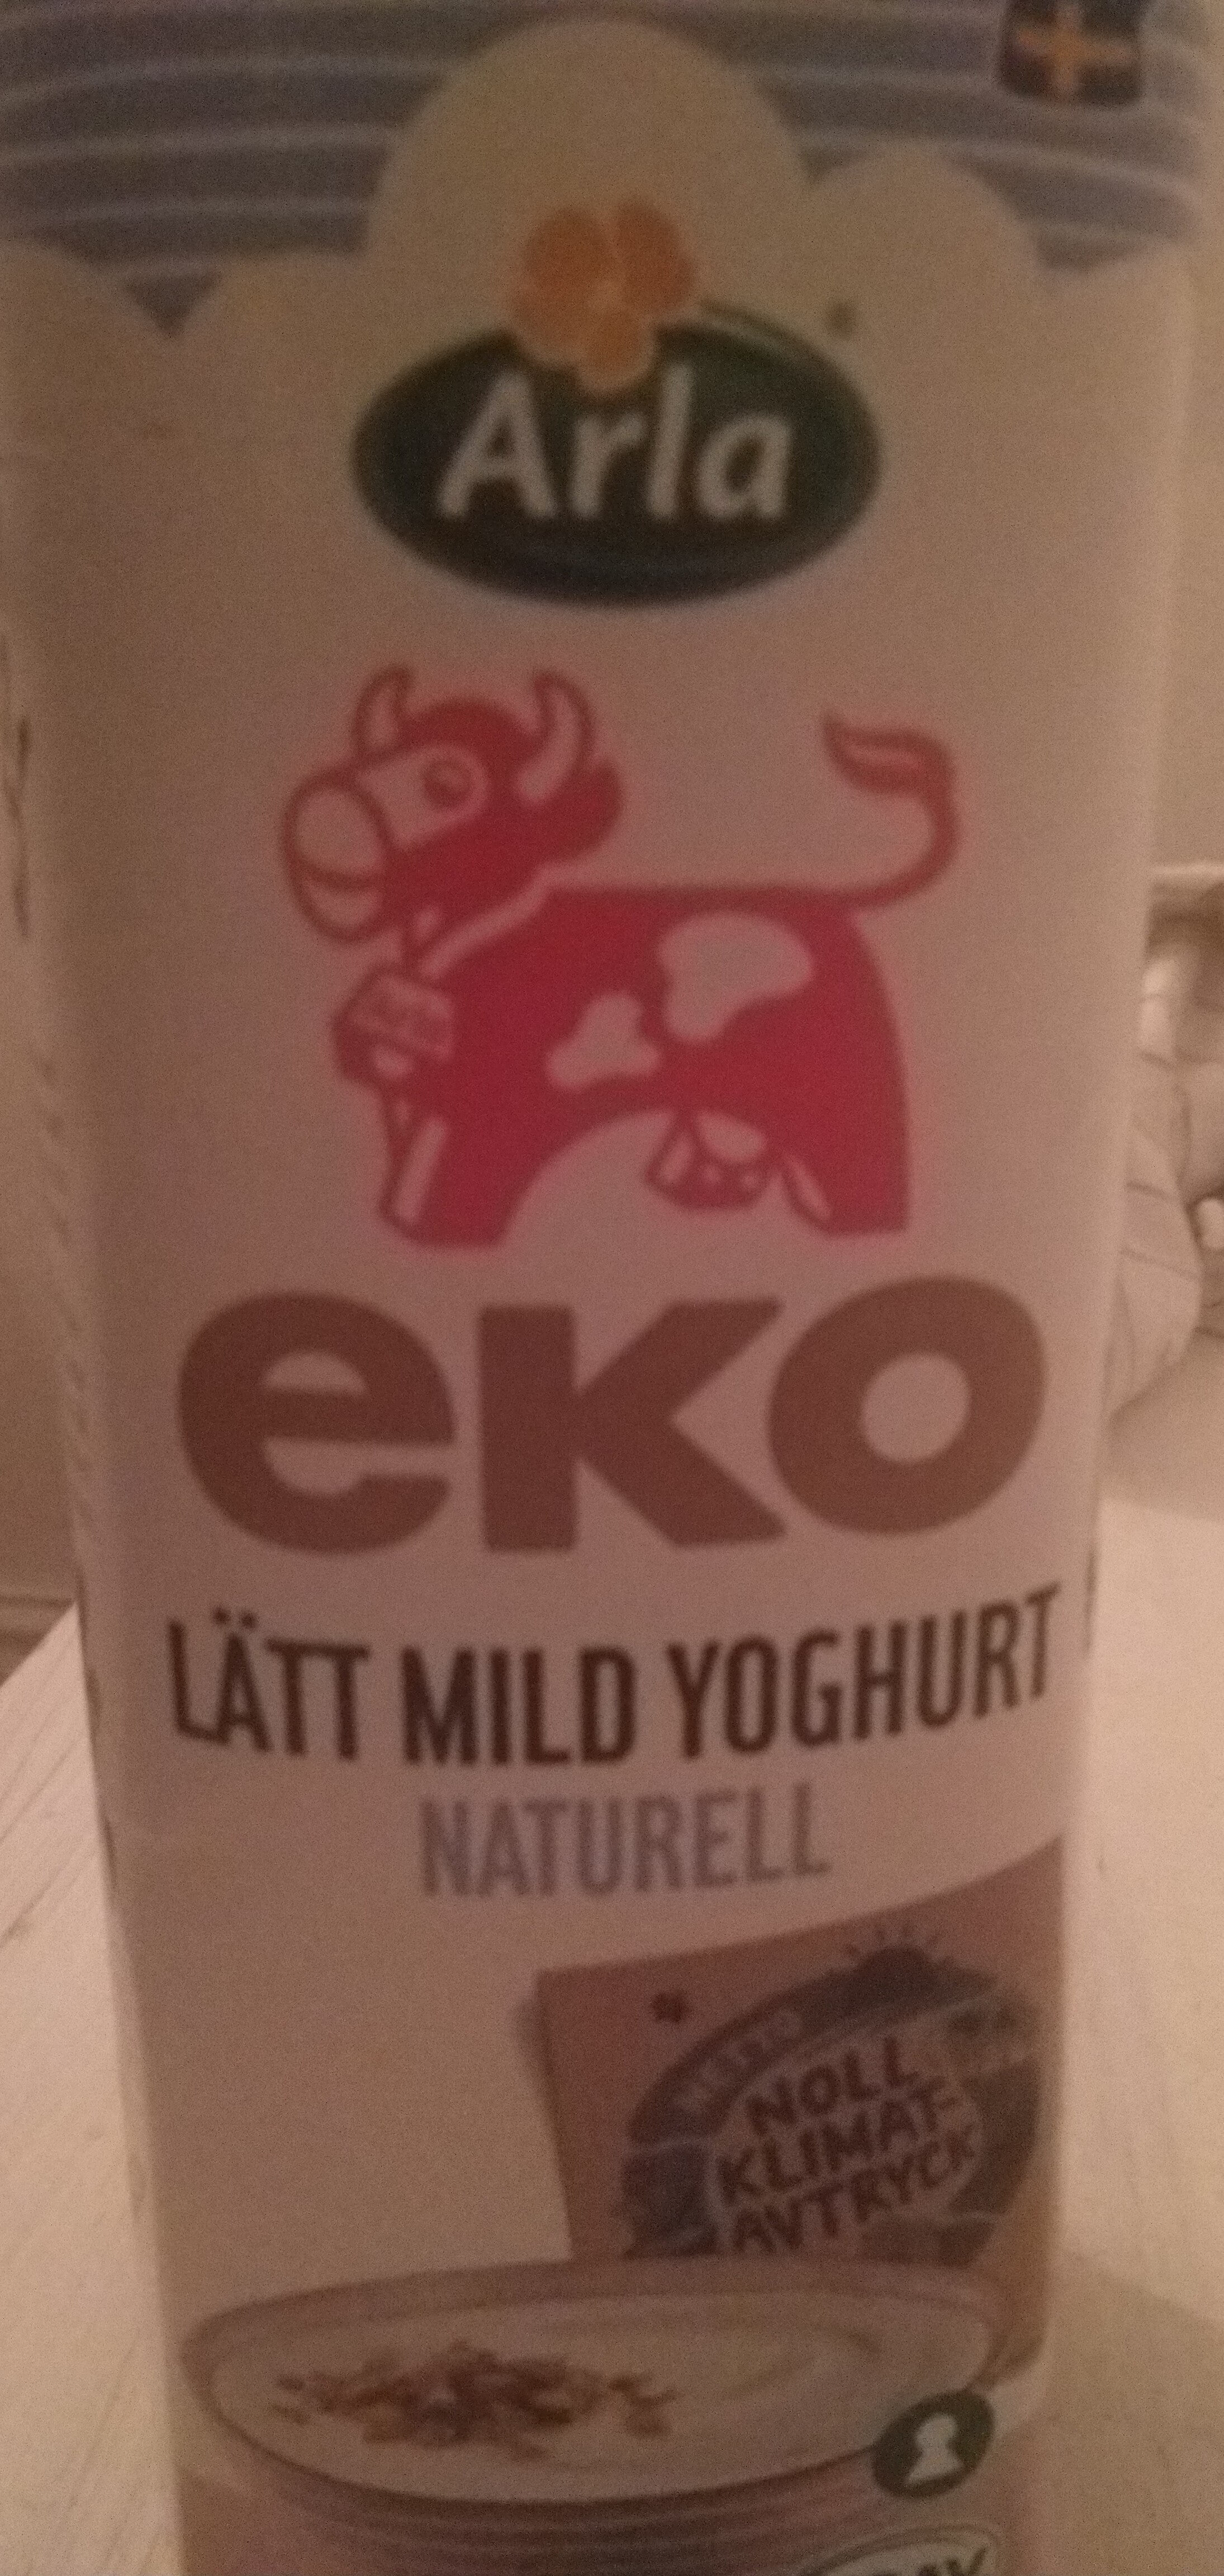 eko lätt mild yoghurt naturell - Produkt